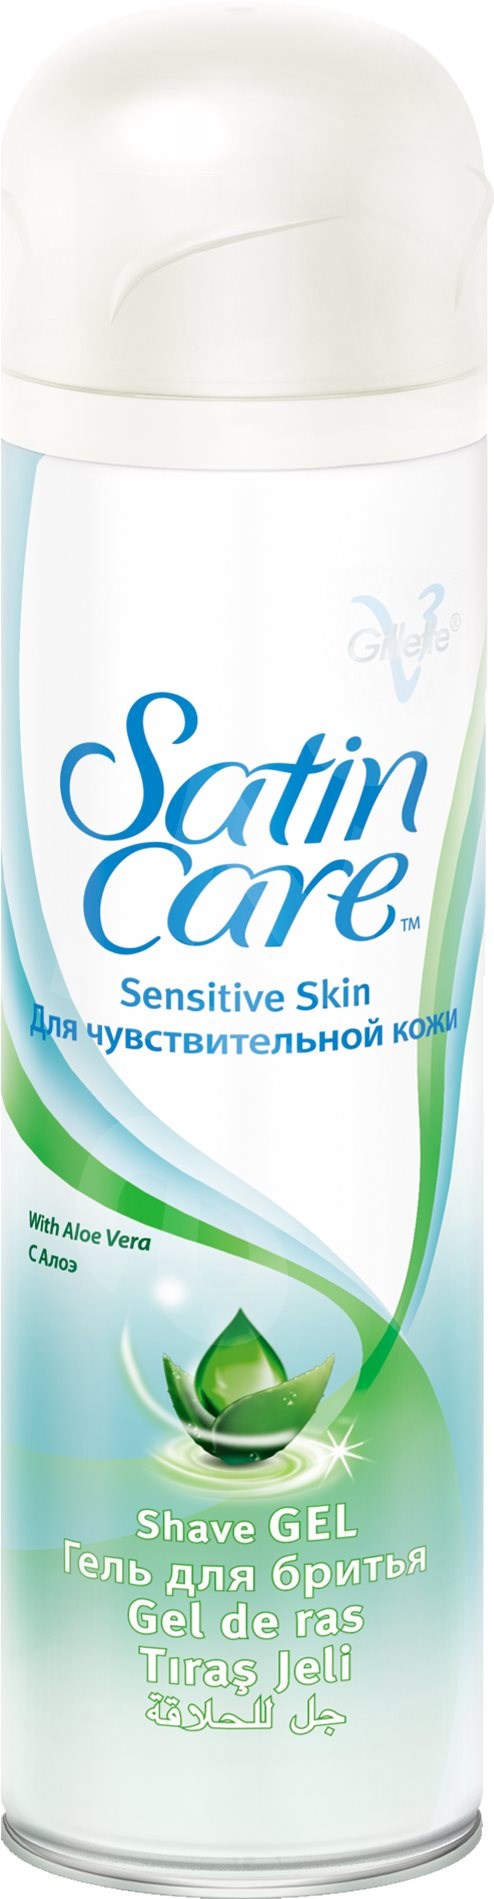 19 Gillette Satin Care Sensitive gel na holeni 200 ml.jpg